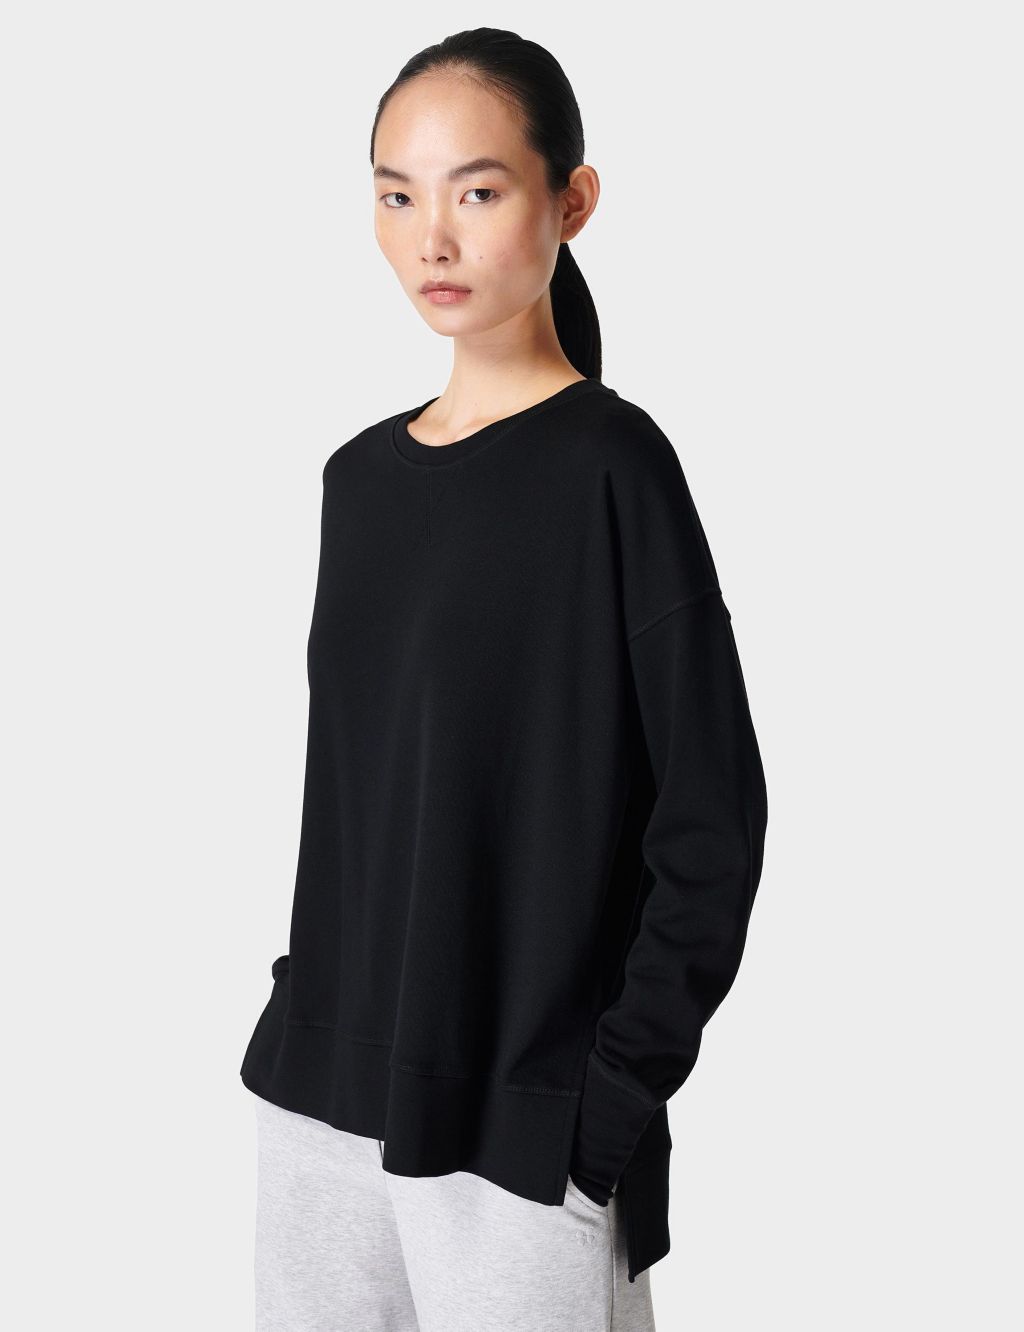 After Class Crop Sweatshirt - Black